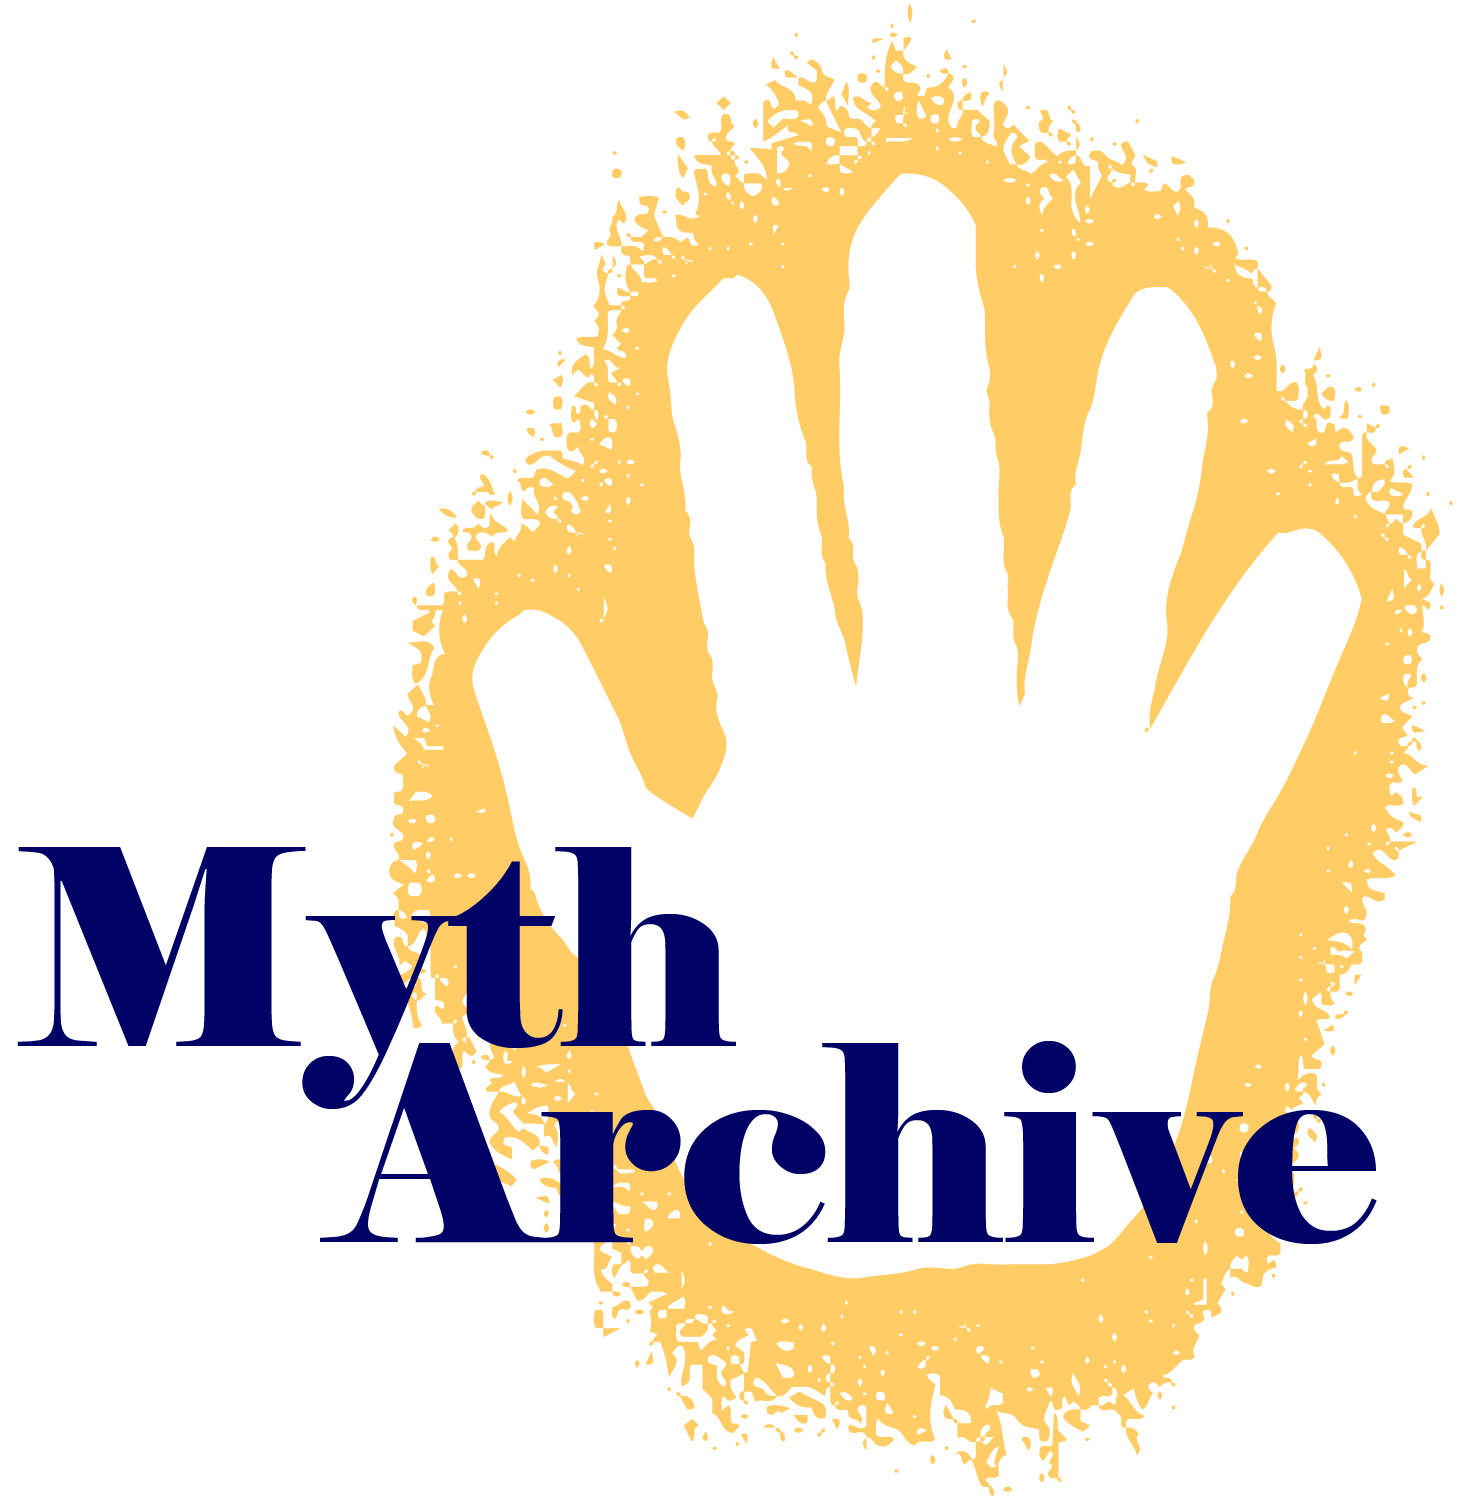 Myth Archive Logo